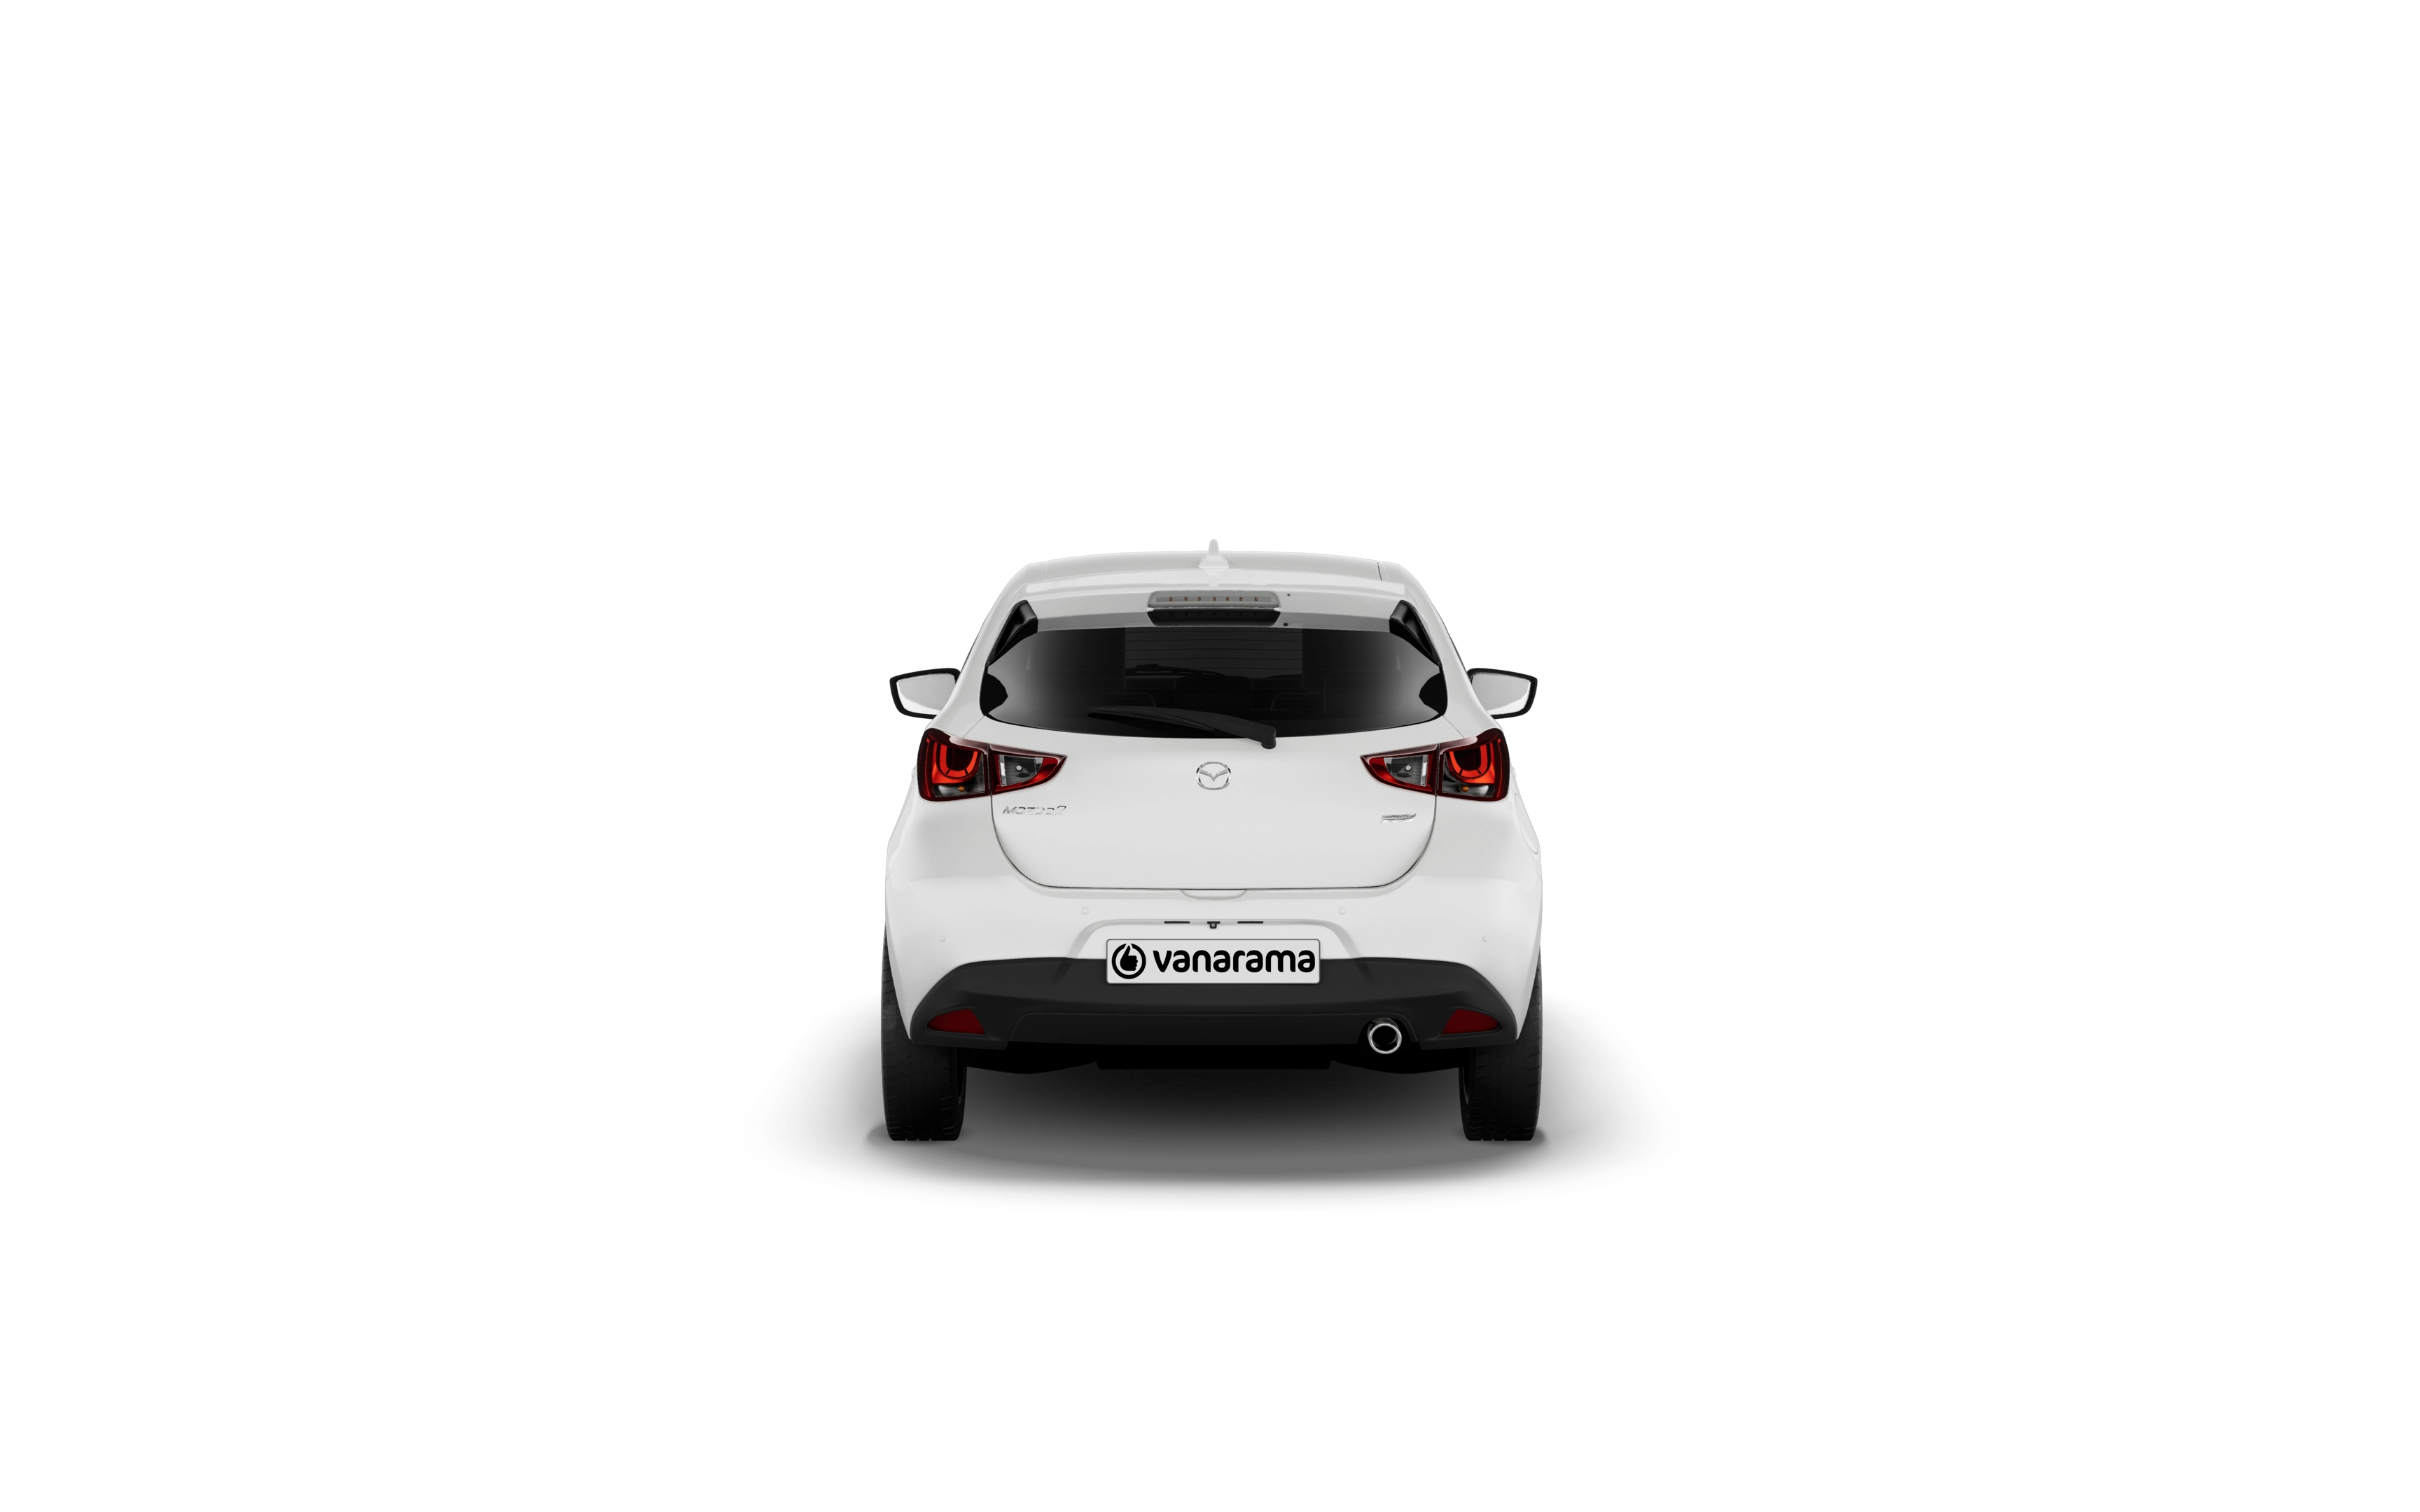 Mazda mazda2 hatchback 1.5 skyactiv g sport 5 doors auto